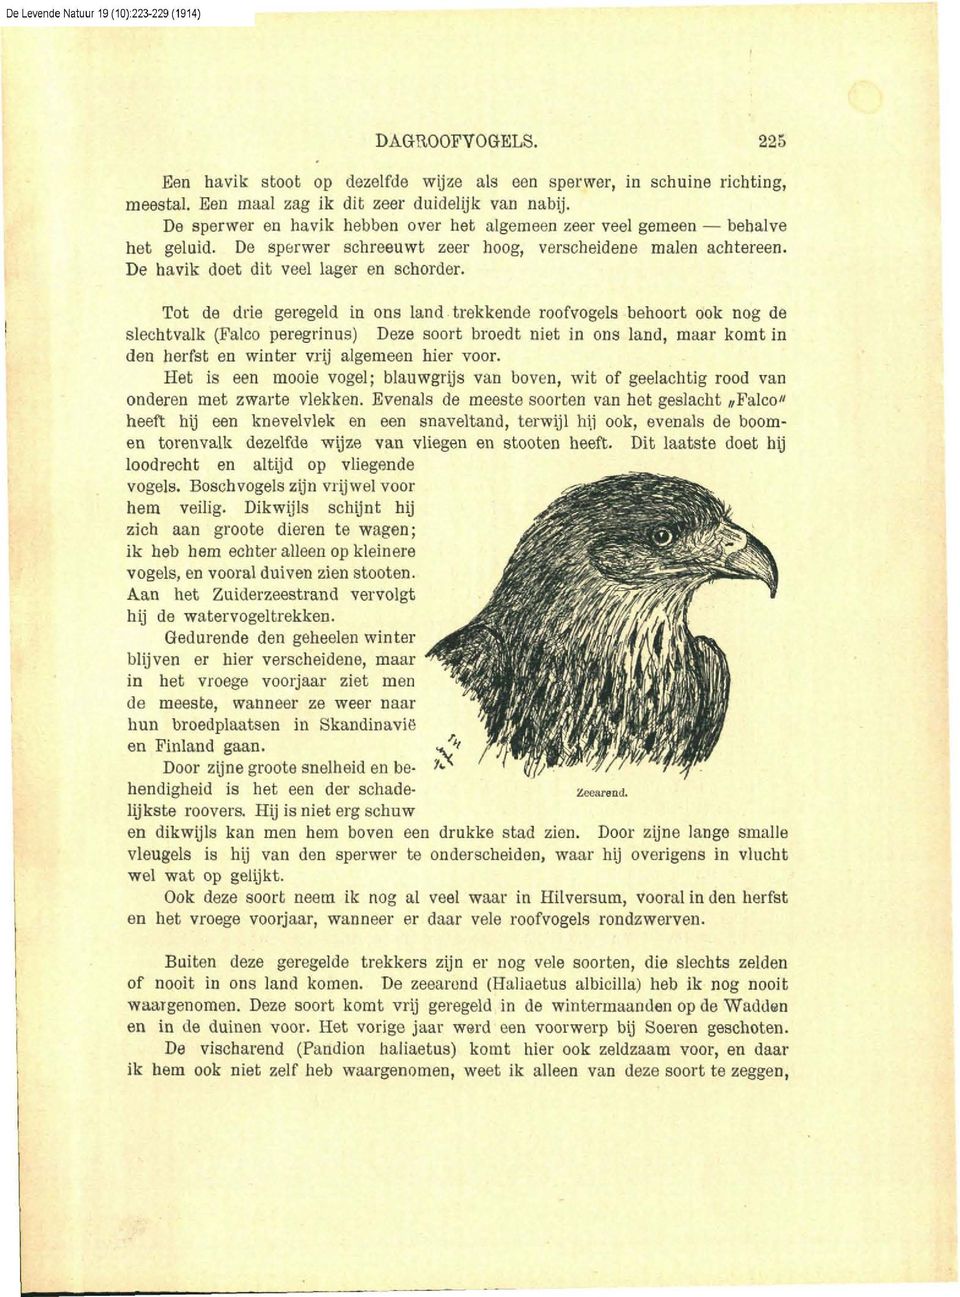 Tot de drie geregeld in ons land trekkende roofvogels behoort ook nog de slechtvalk (Falco peregrinus) Deze soort broedt niet in ons land, maar komt in den herfst en winter vrij algemeen hier voor.